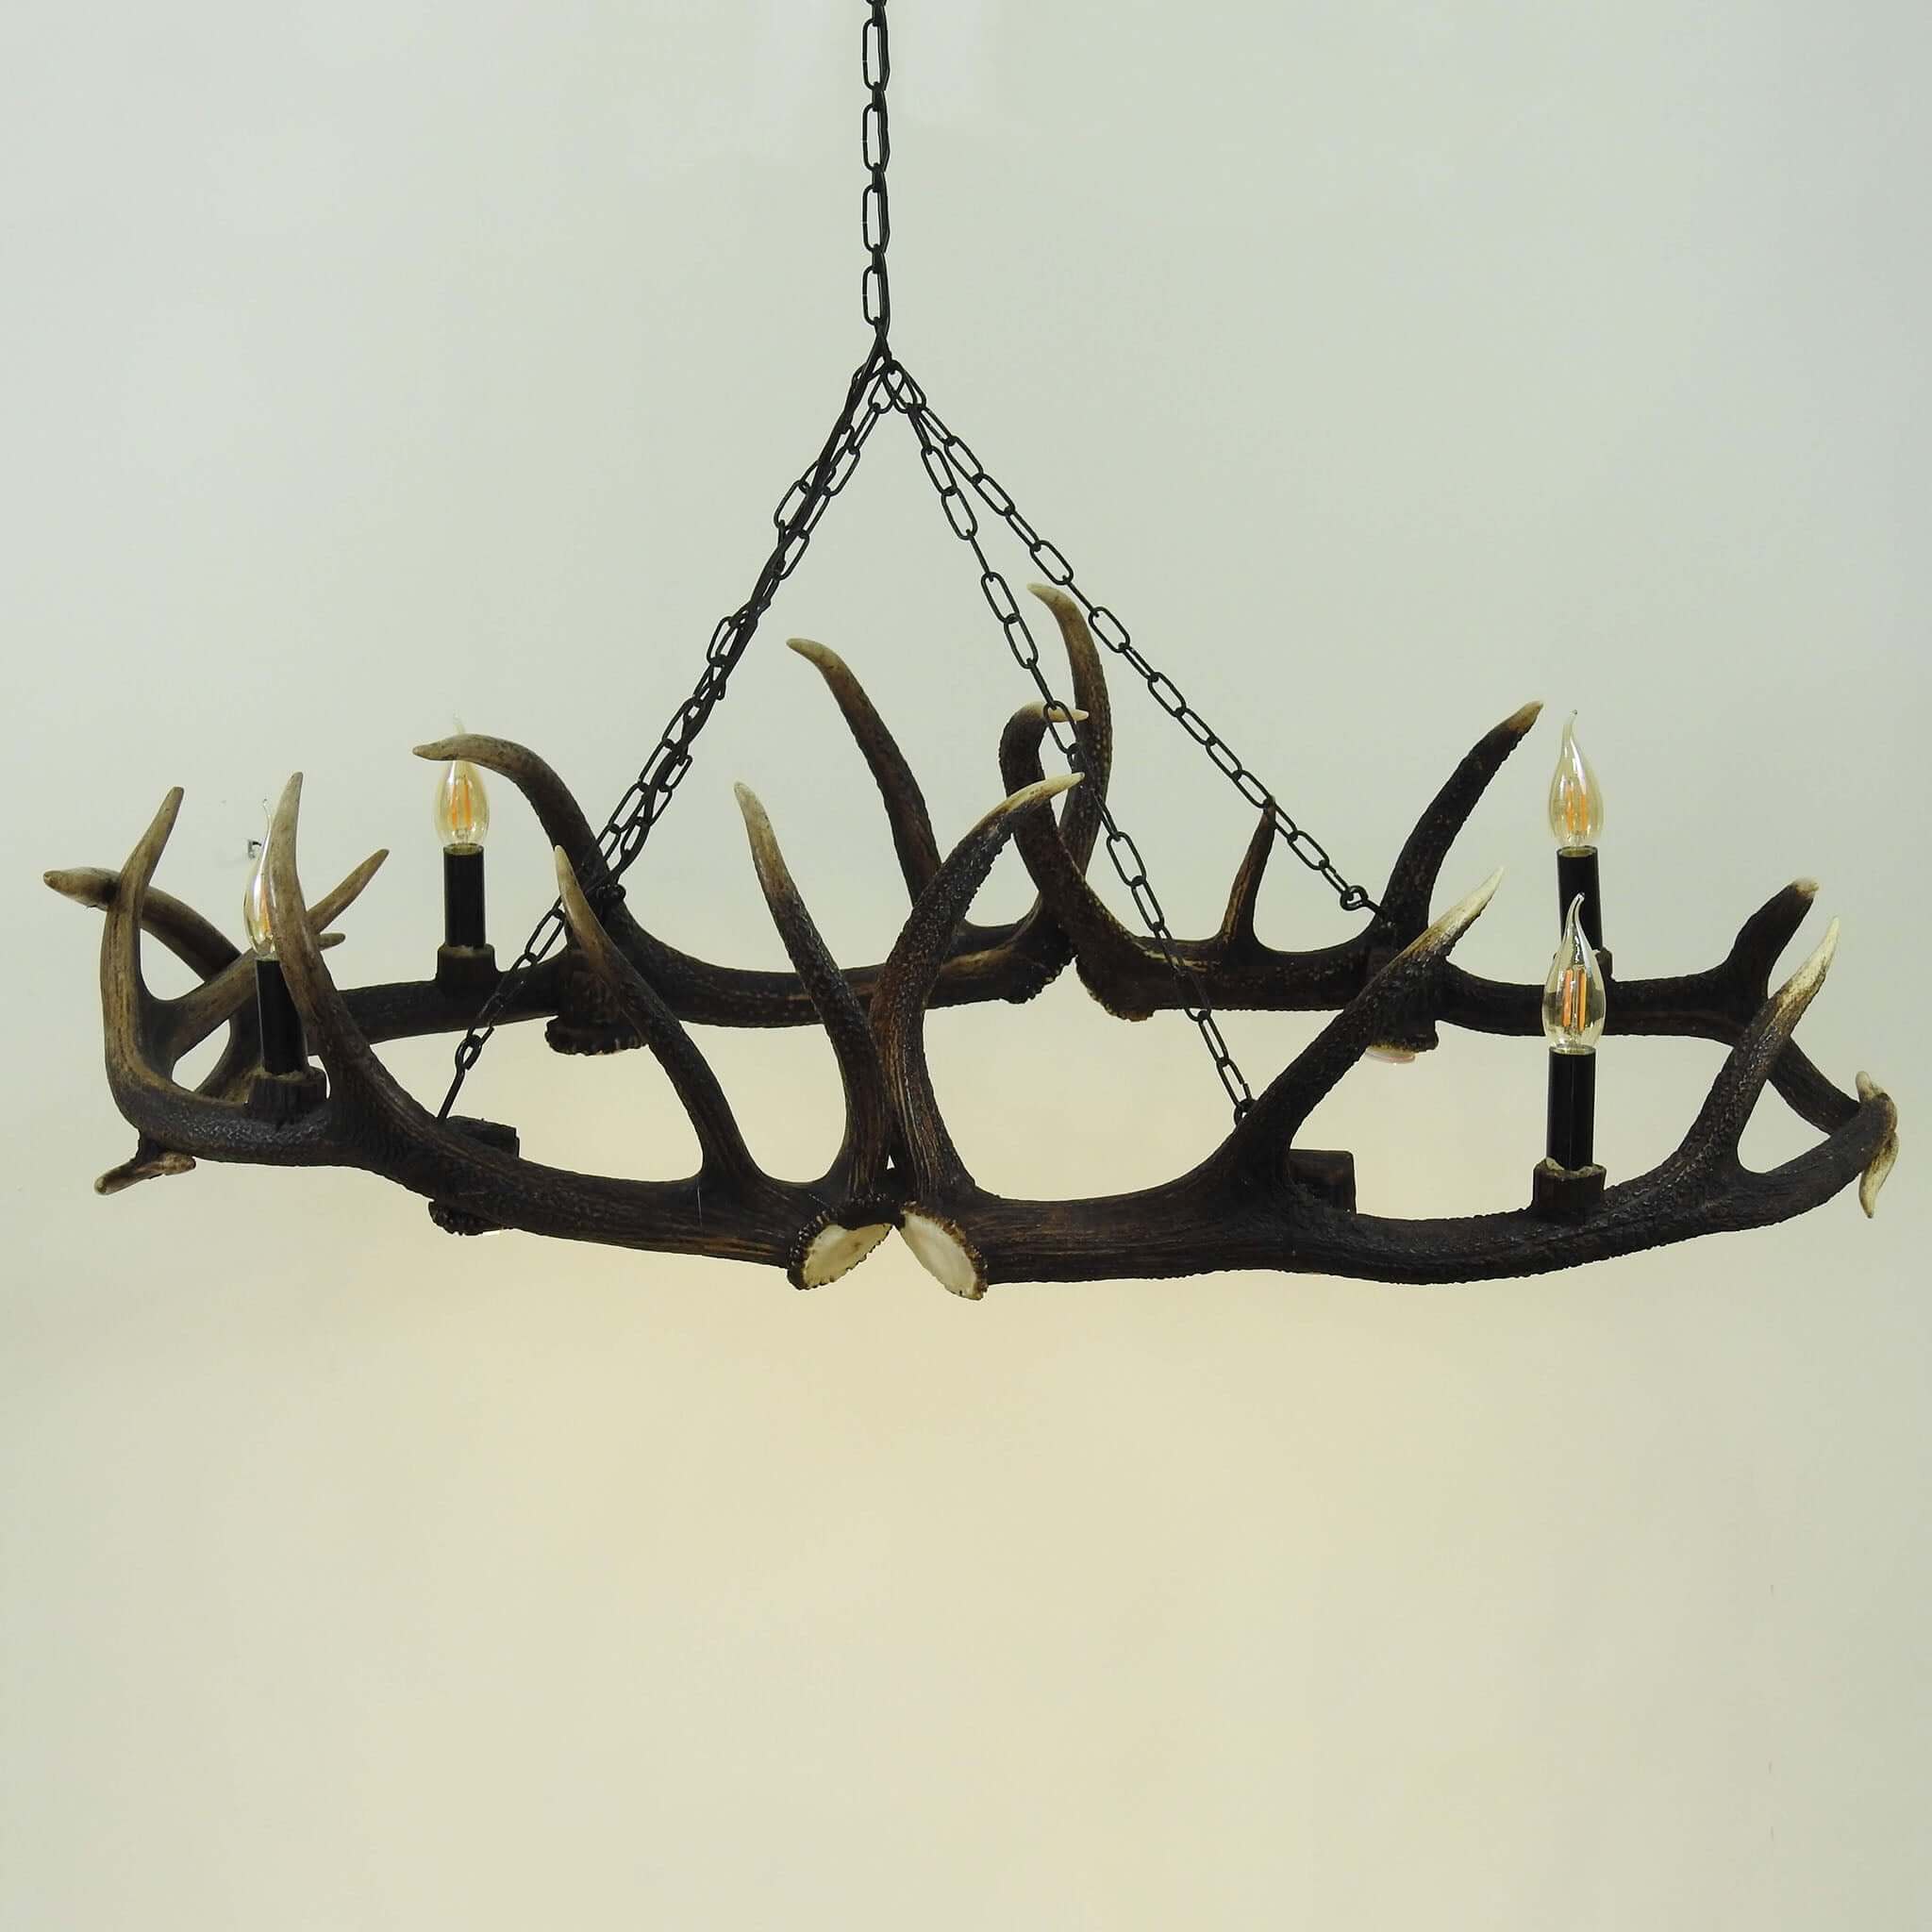 Large antler chandelier for living room.